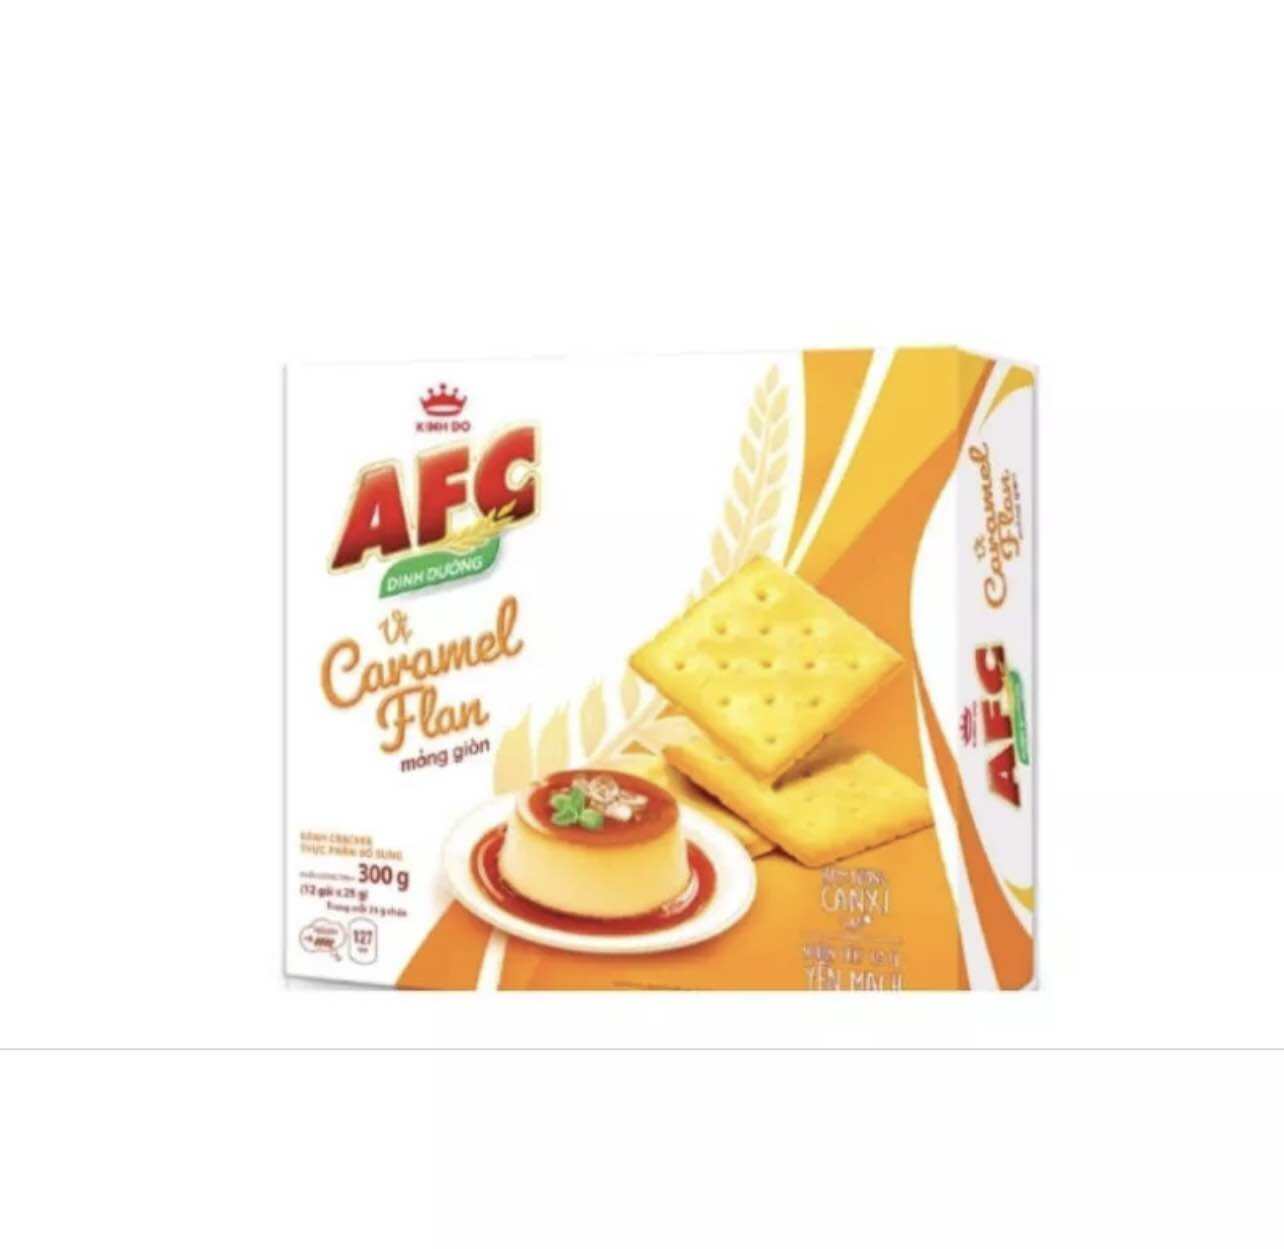 Bánh quy dinh dưỡng AFC vị Caramel Flan, Hộp 261g  12 gói